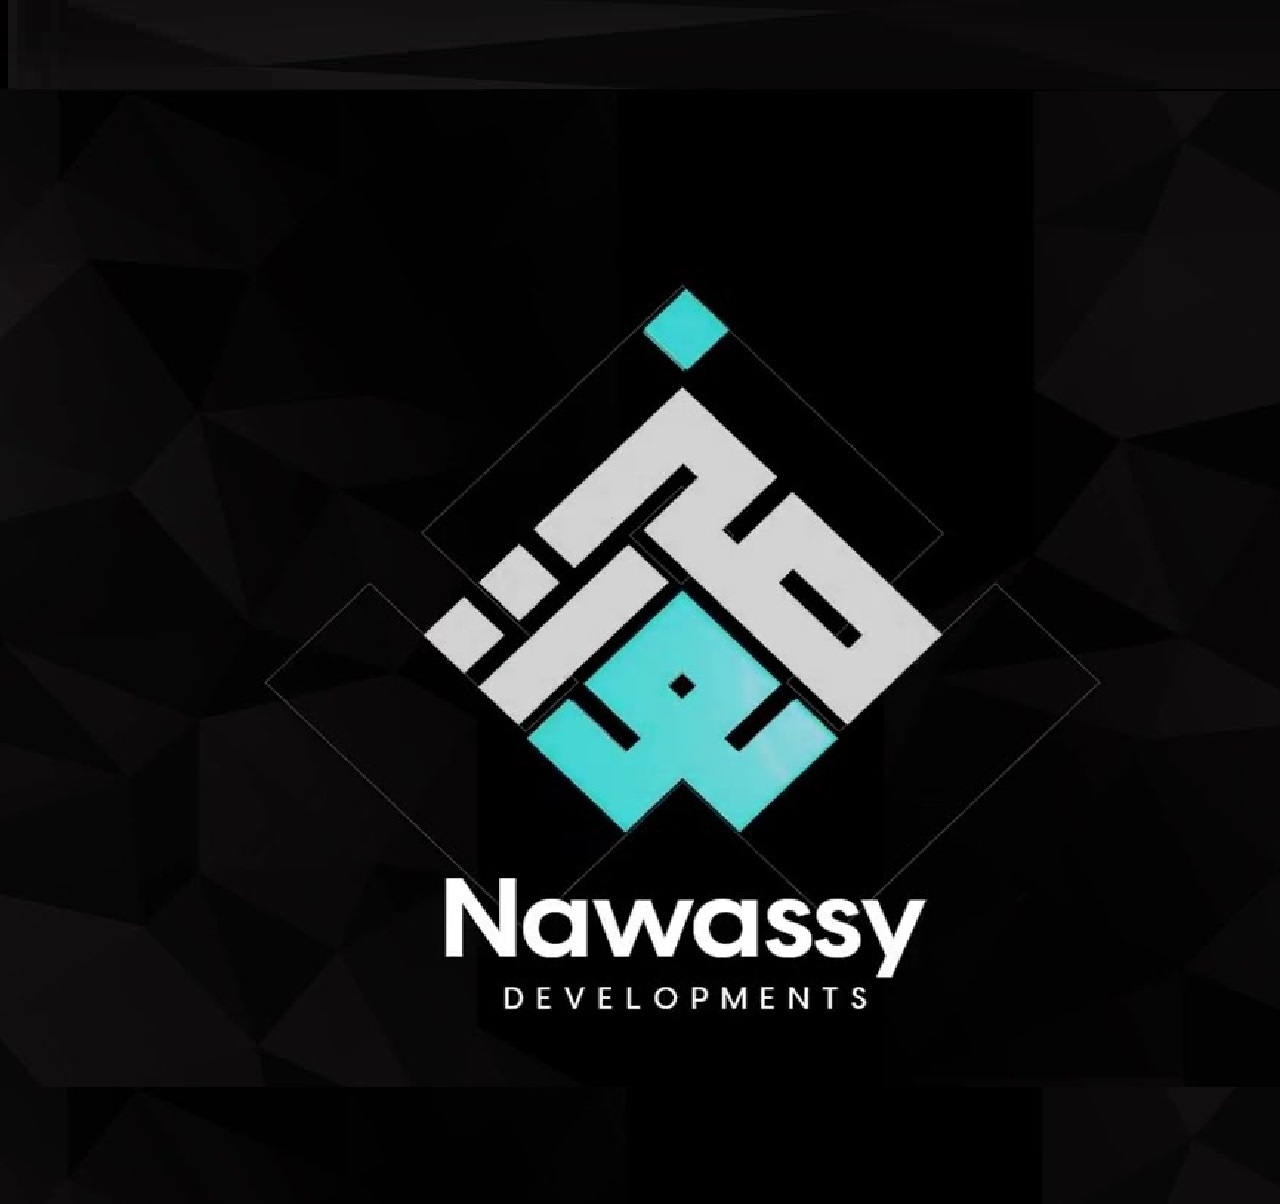 Nawassy